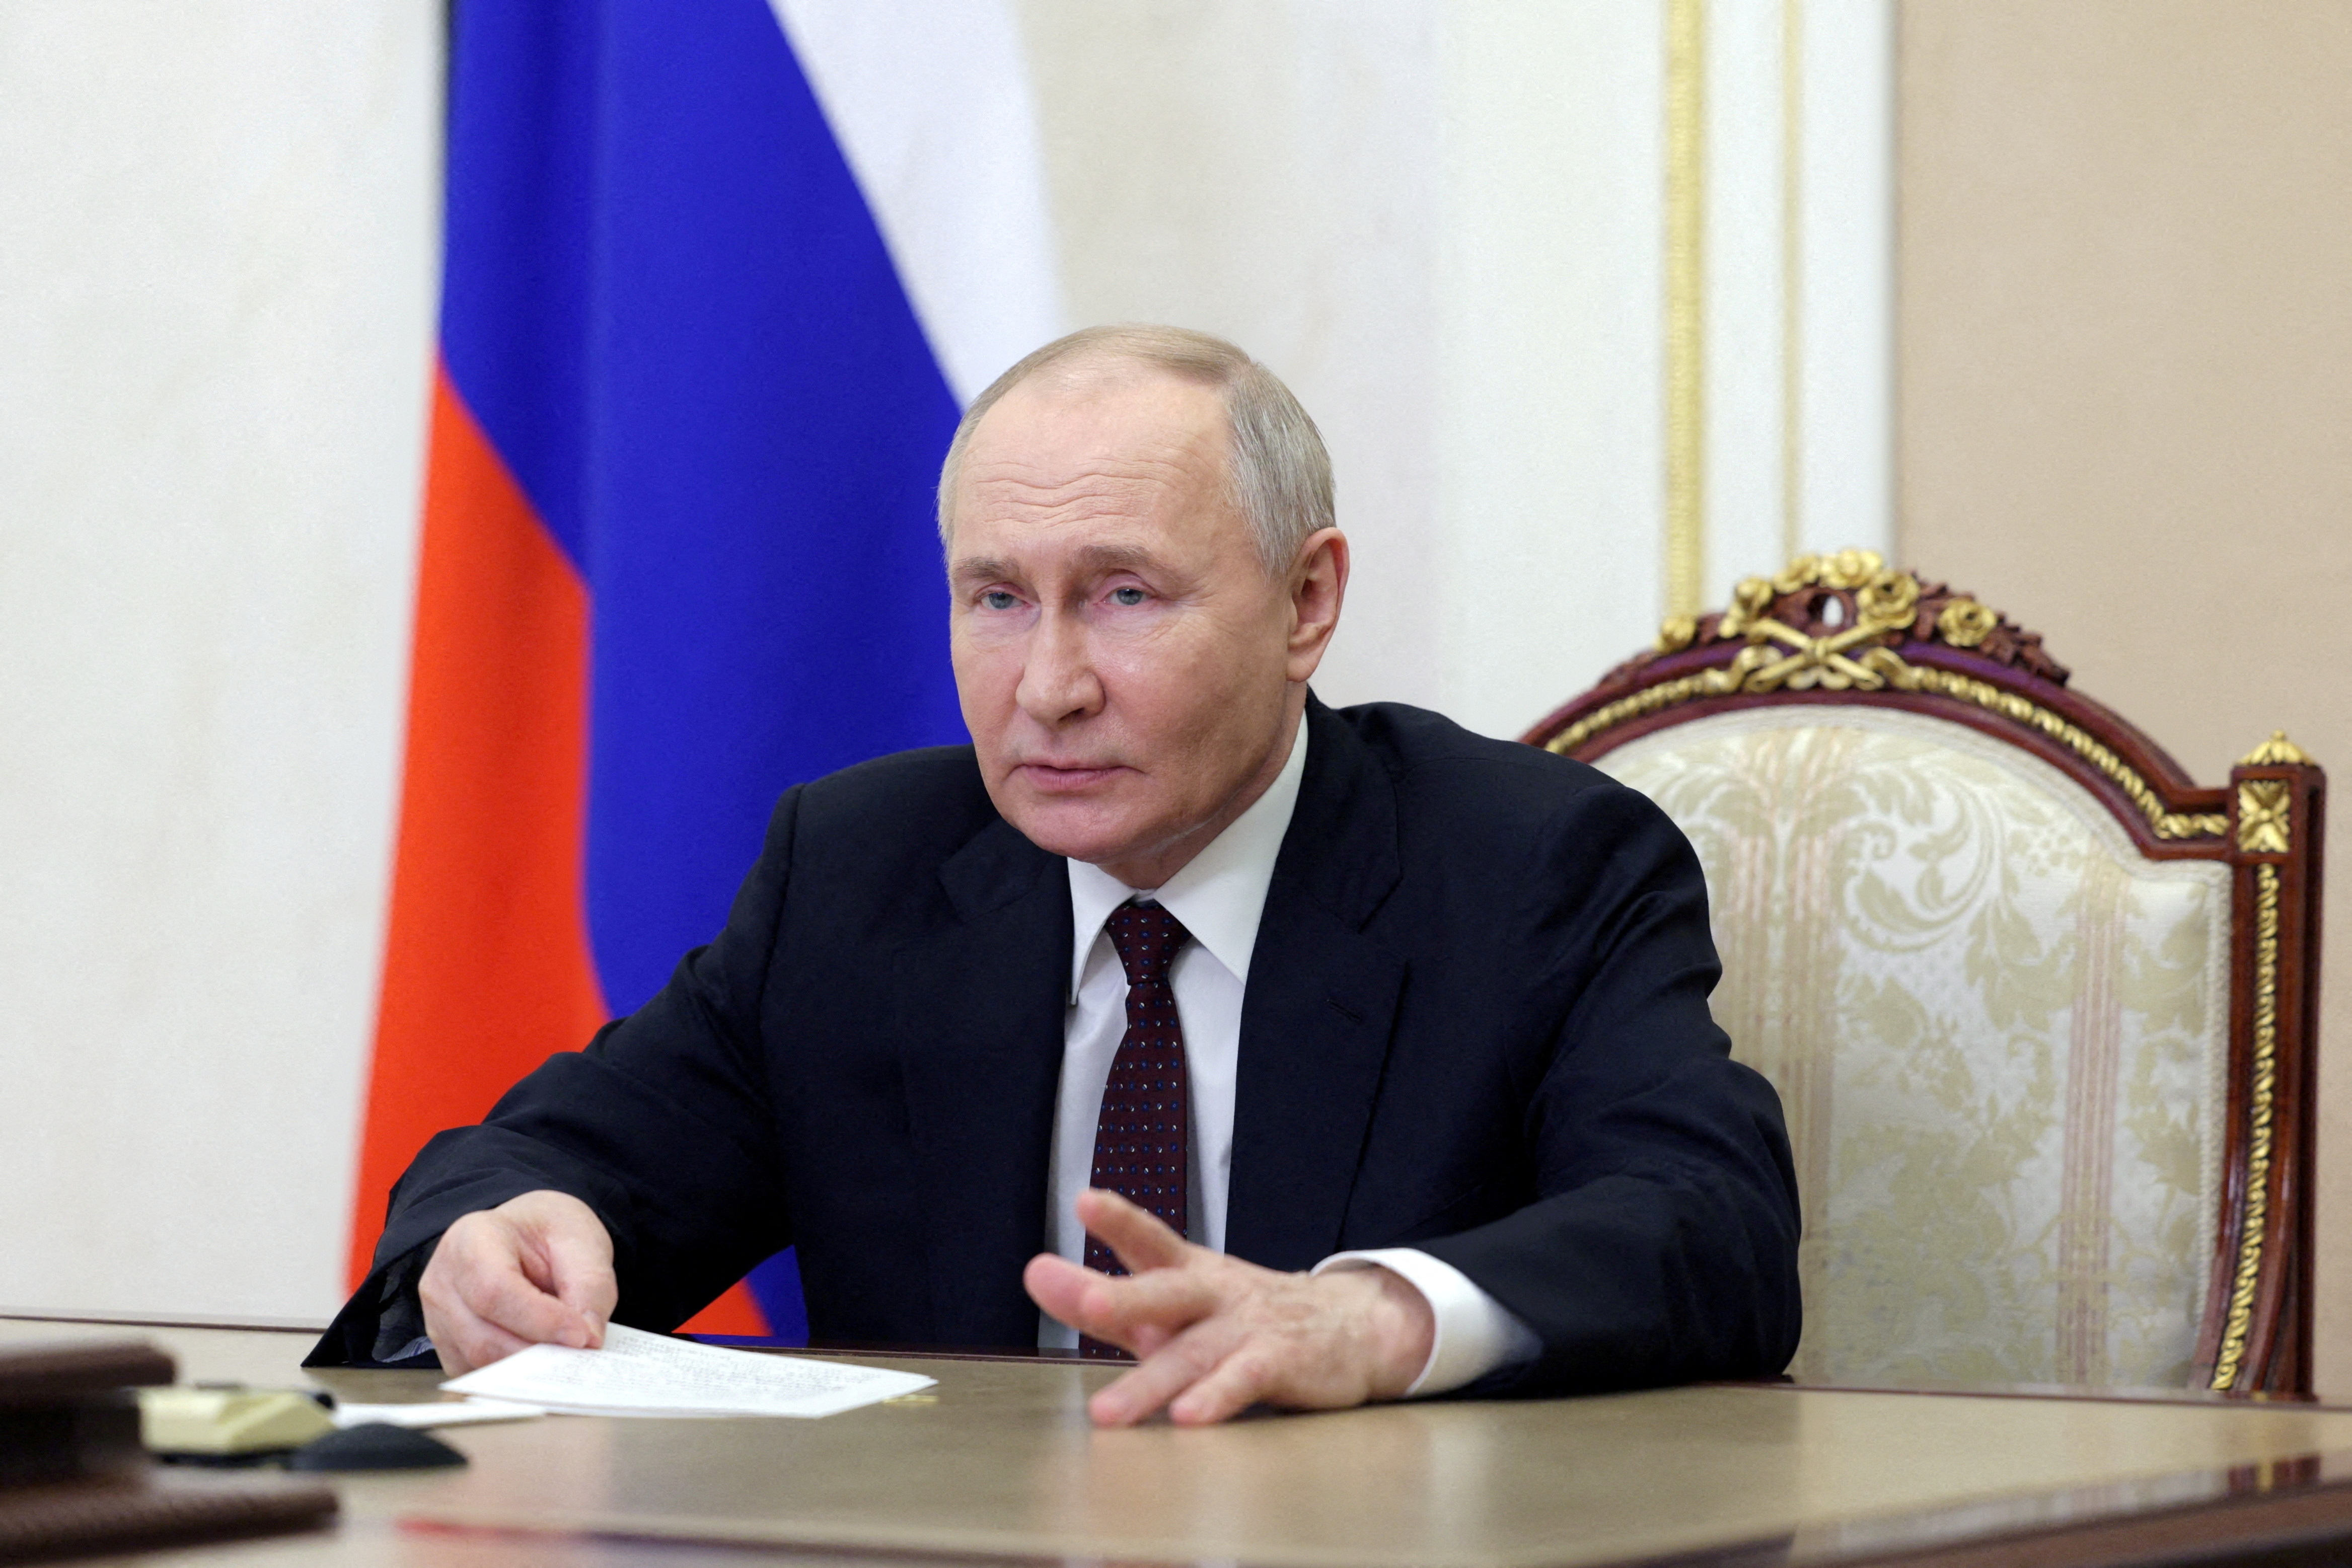 プーチン氏、米の凍結資産没収に対応する大統領令に署名